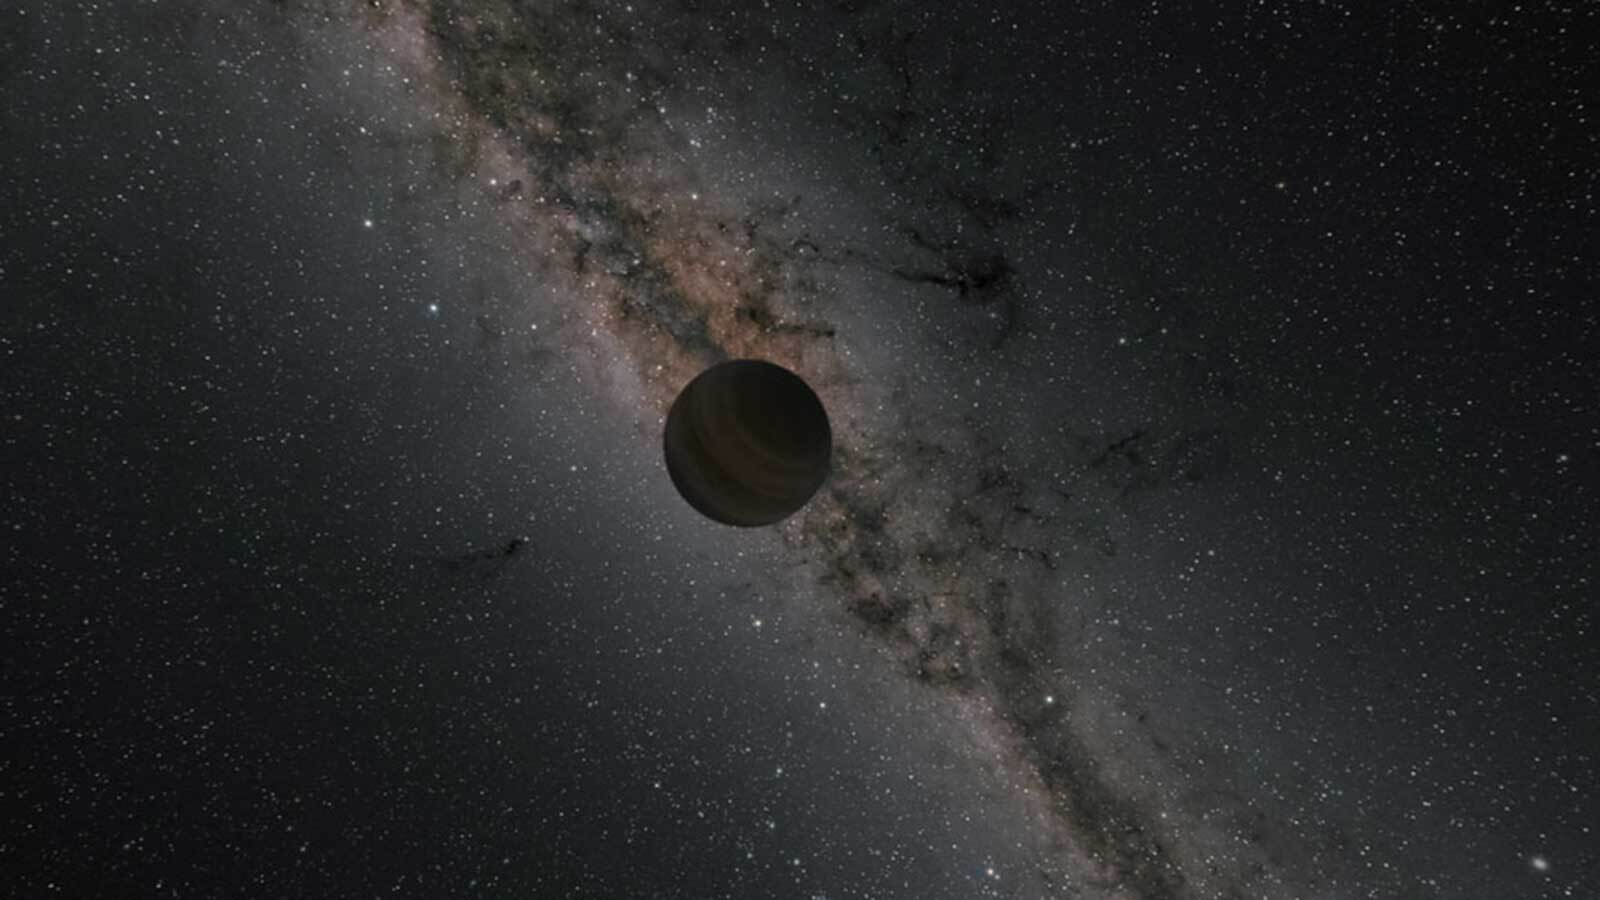 Spazio: 27 pianeti vaganti ‘simili’ alla Terra scoperti nella nostra galassia